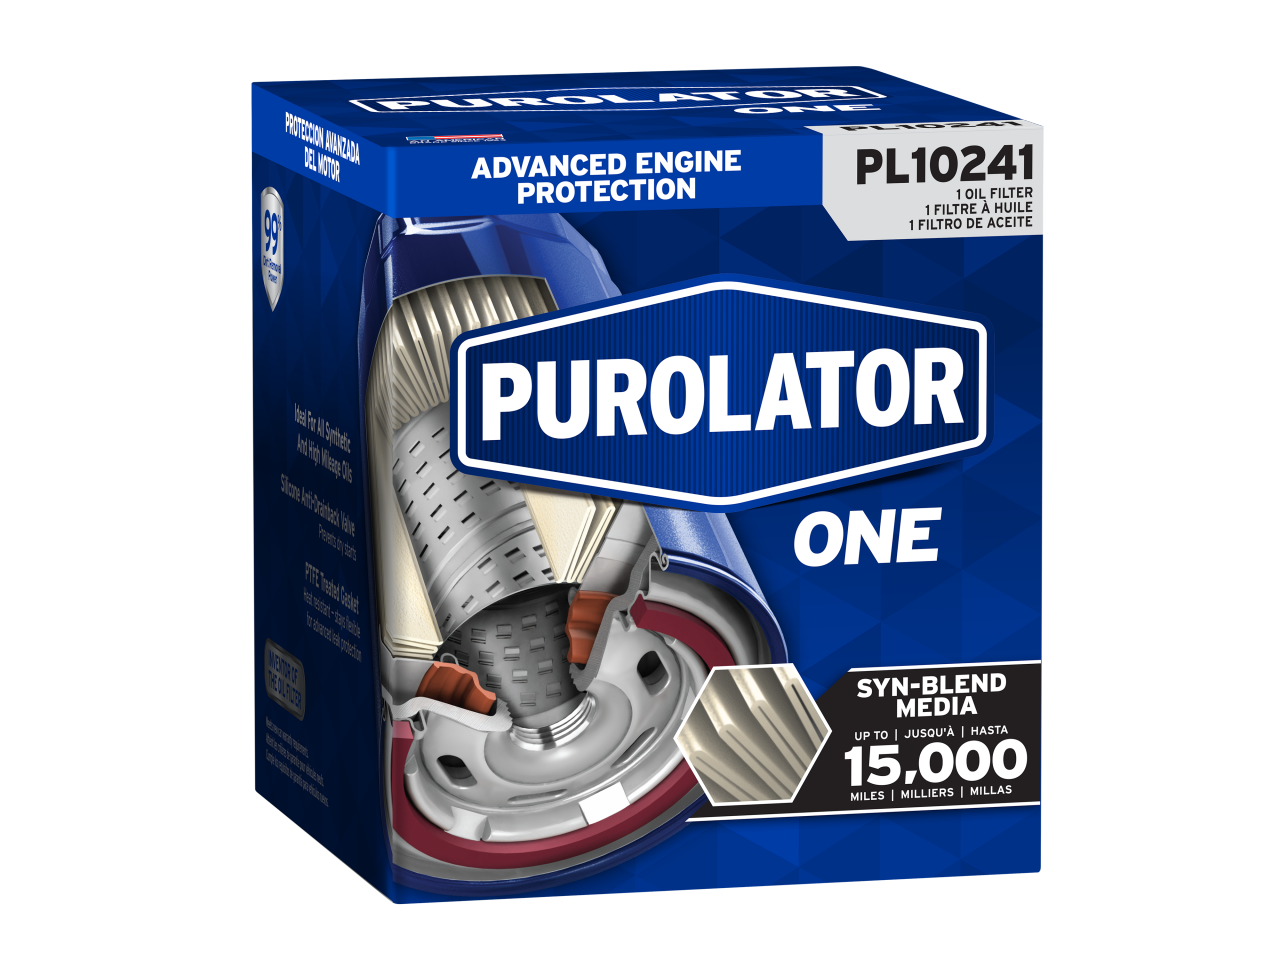 Les filtres à huile PurolatorONE maintiennent les moteurs en fonctionnement à des performances optimales jusqu’à 10 000 miles de protection avancée du moteur.